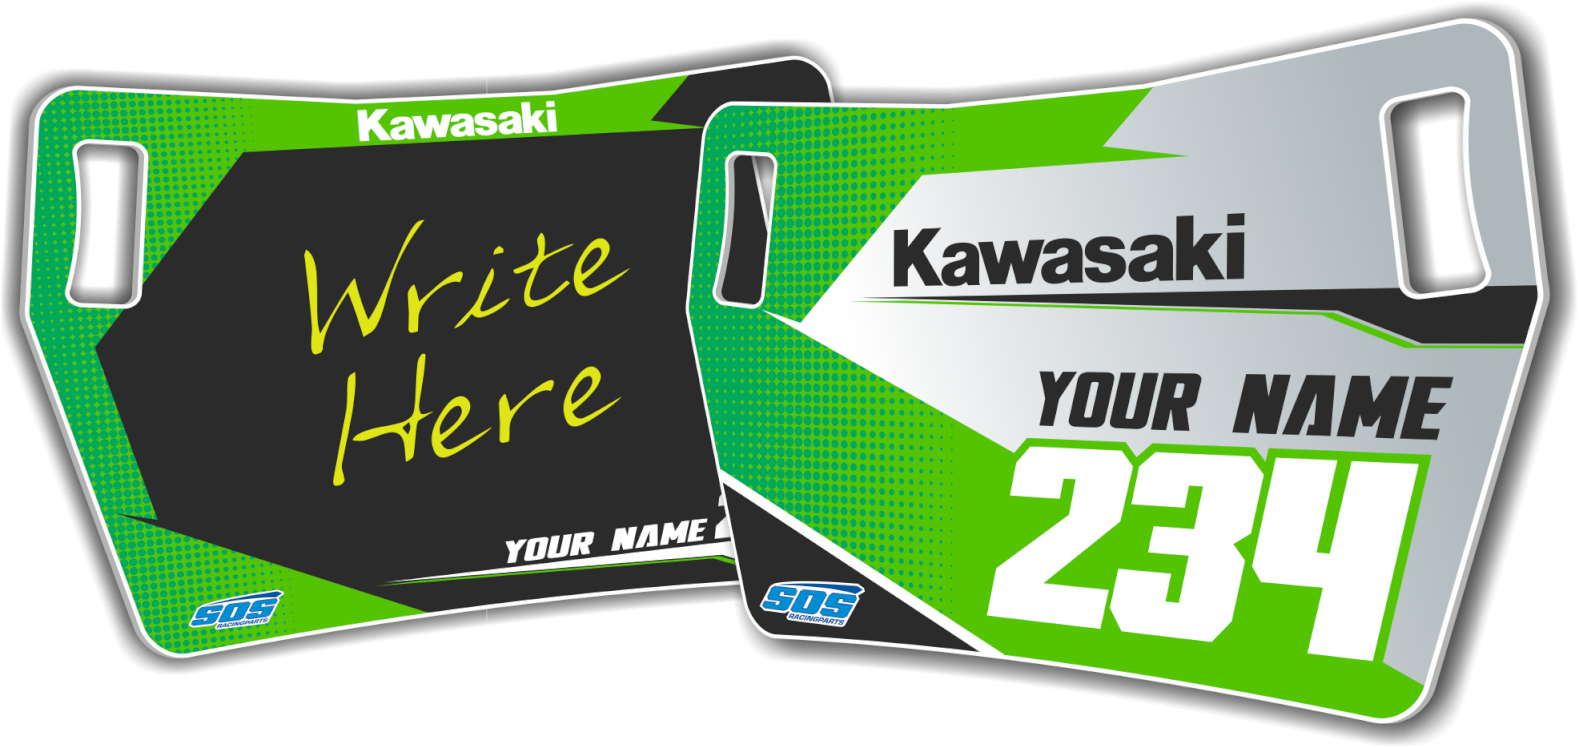 Race 1 Kawasaki Pitboard